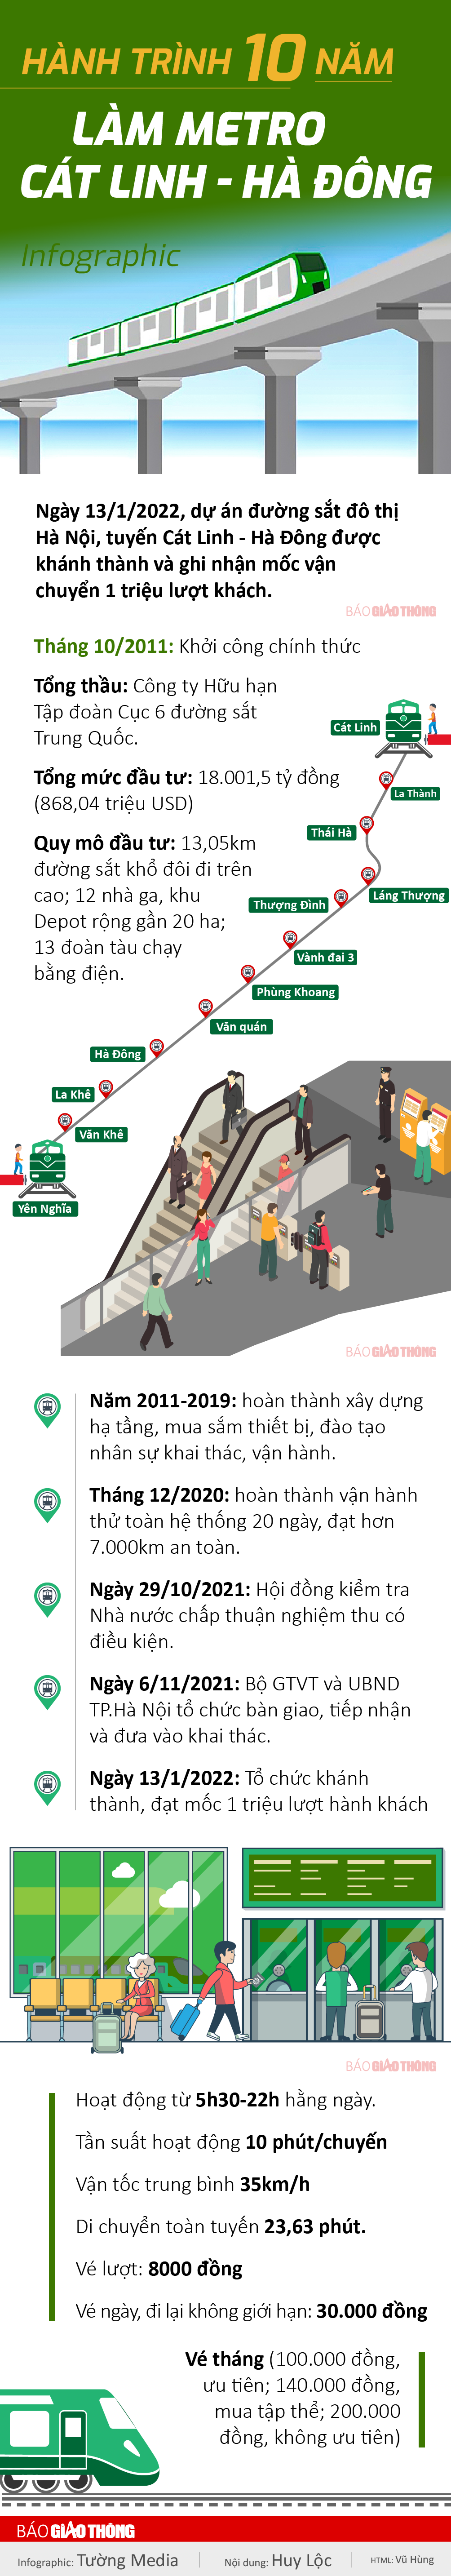 Infographic: Hành trình một thập kỷ làm tuyến metro Cát Linh - Hà Đông - 1